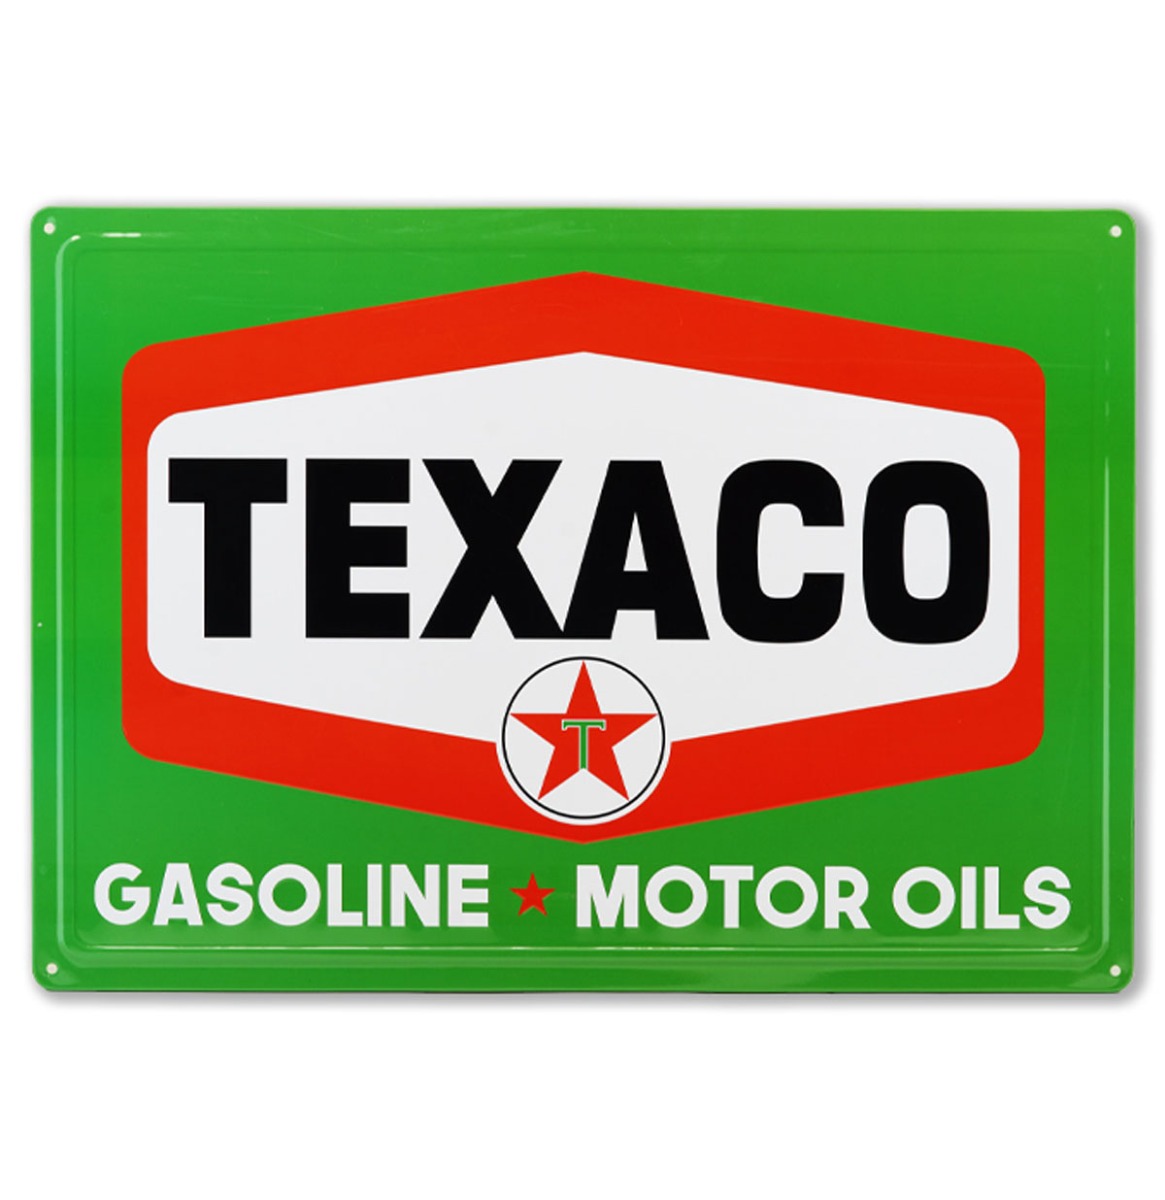 Texaco Gasoline Motor Oil Metalen Bord Met Relief 43 x 31 cm